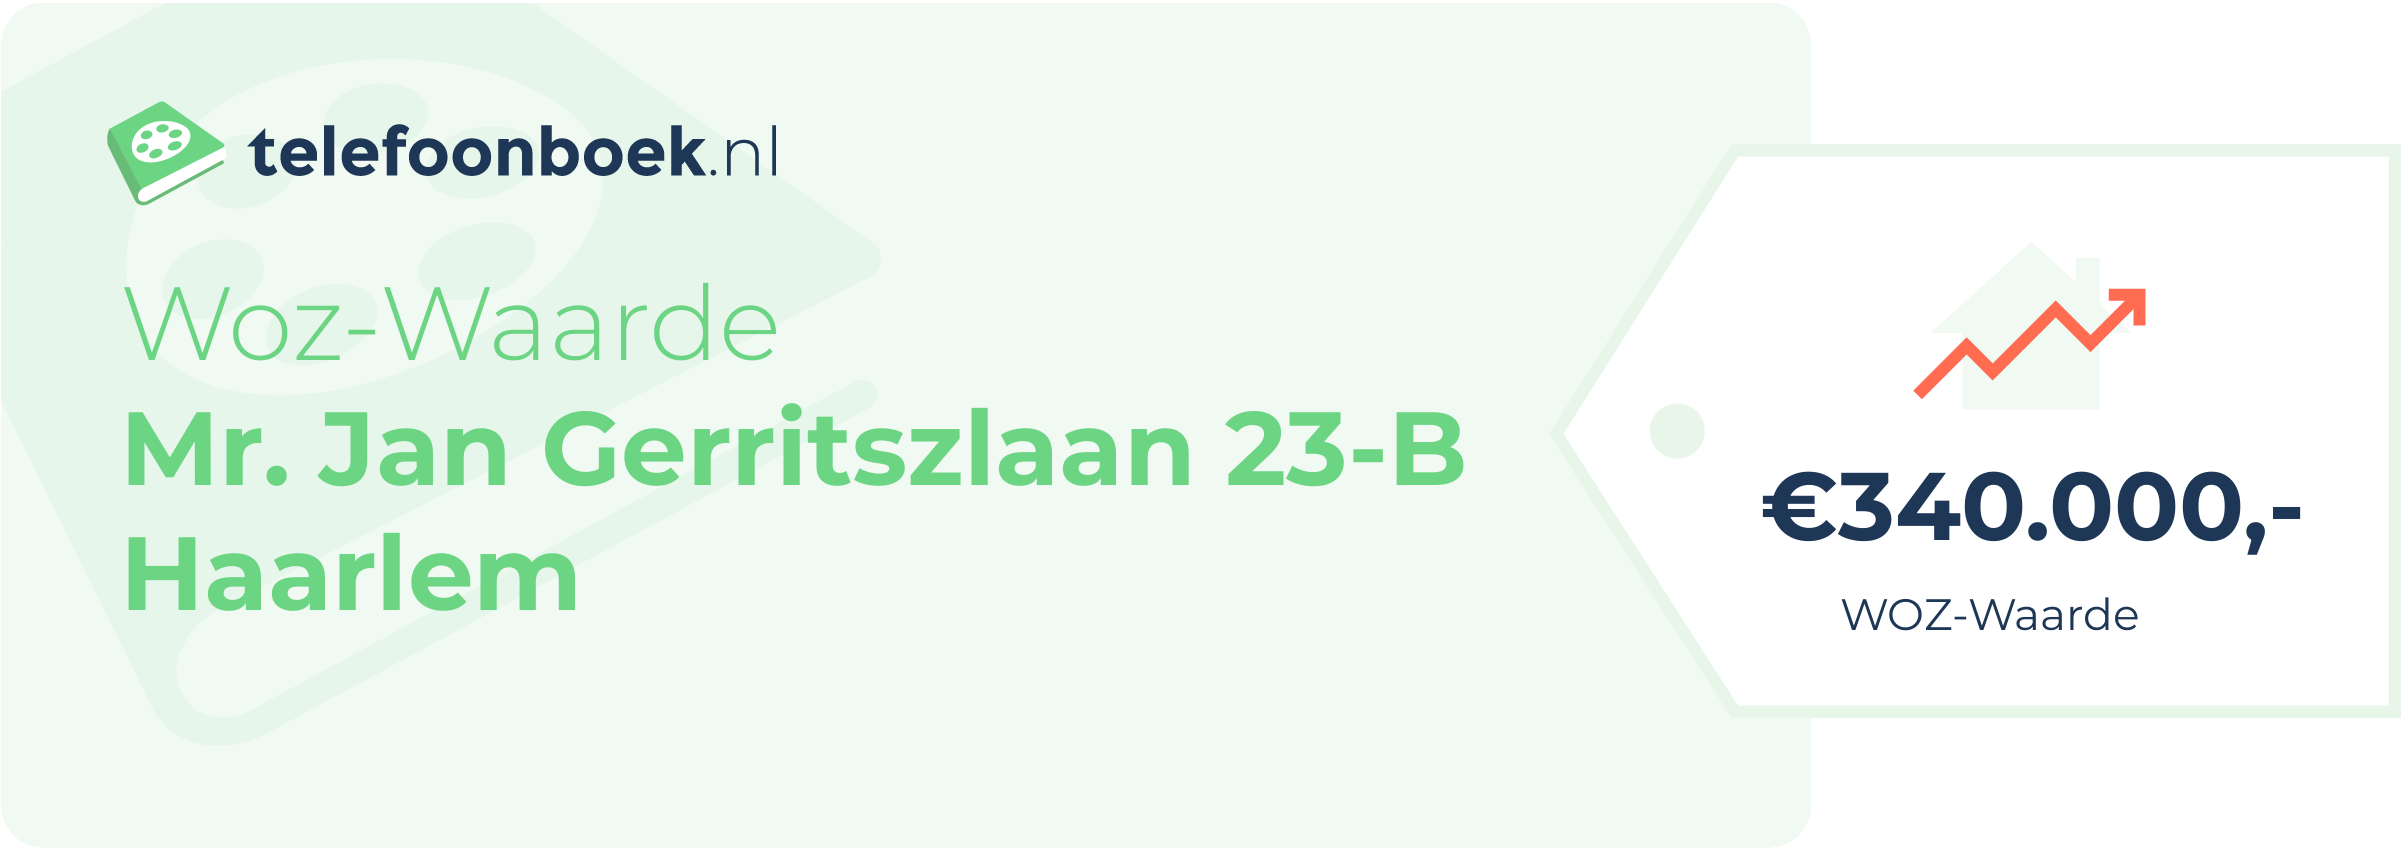 WOZ-waarde Mr. Jan Gerritszlaan 23-B Haarlem